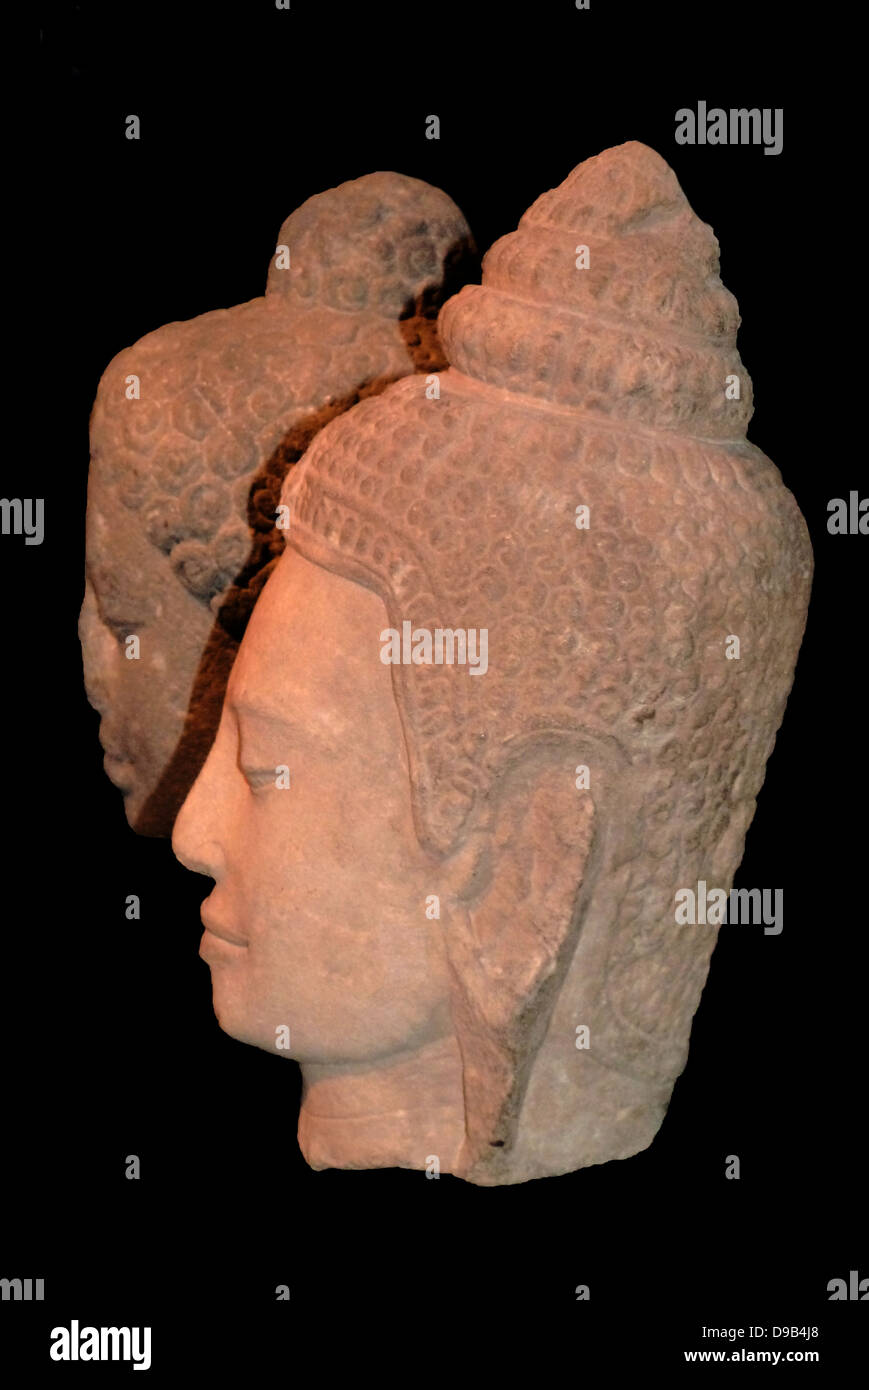 Testa del Buddha. 800-30, Shailendra dinastia, Java Centrale, pietra. La testa formata originariamente parte di una grande immagine del Buddha Shakyamuni. I righelli Shailendra erano forti sostenitori del Buddismo Mahayana ed eretti molti monumenti buddisti nella zona centrale di Java, compreso il complesso di Borobudur. Foto Stock